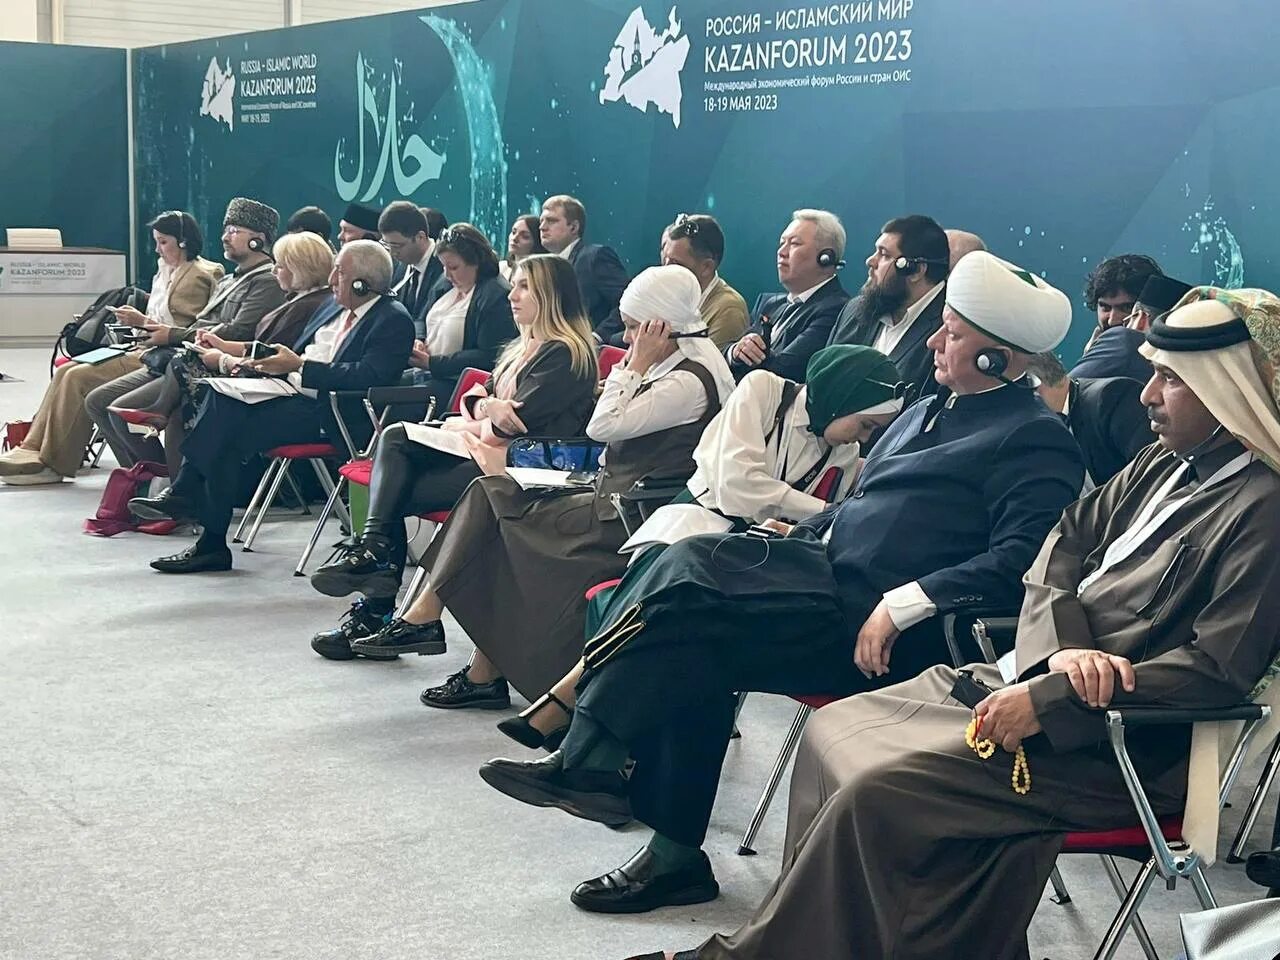 Kazanforum 2023 Россия исламский мир выставка. Организация Исламская конференция.